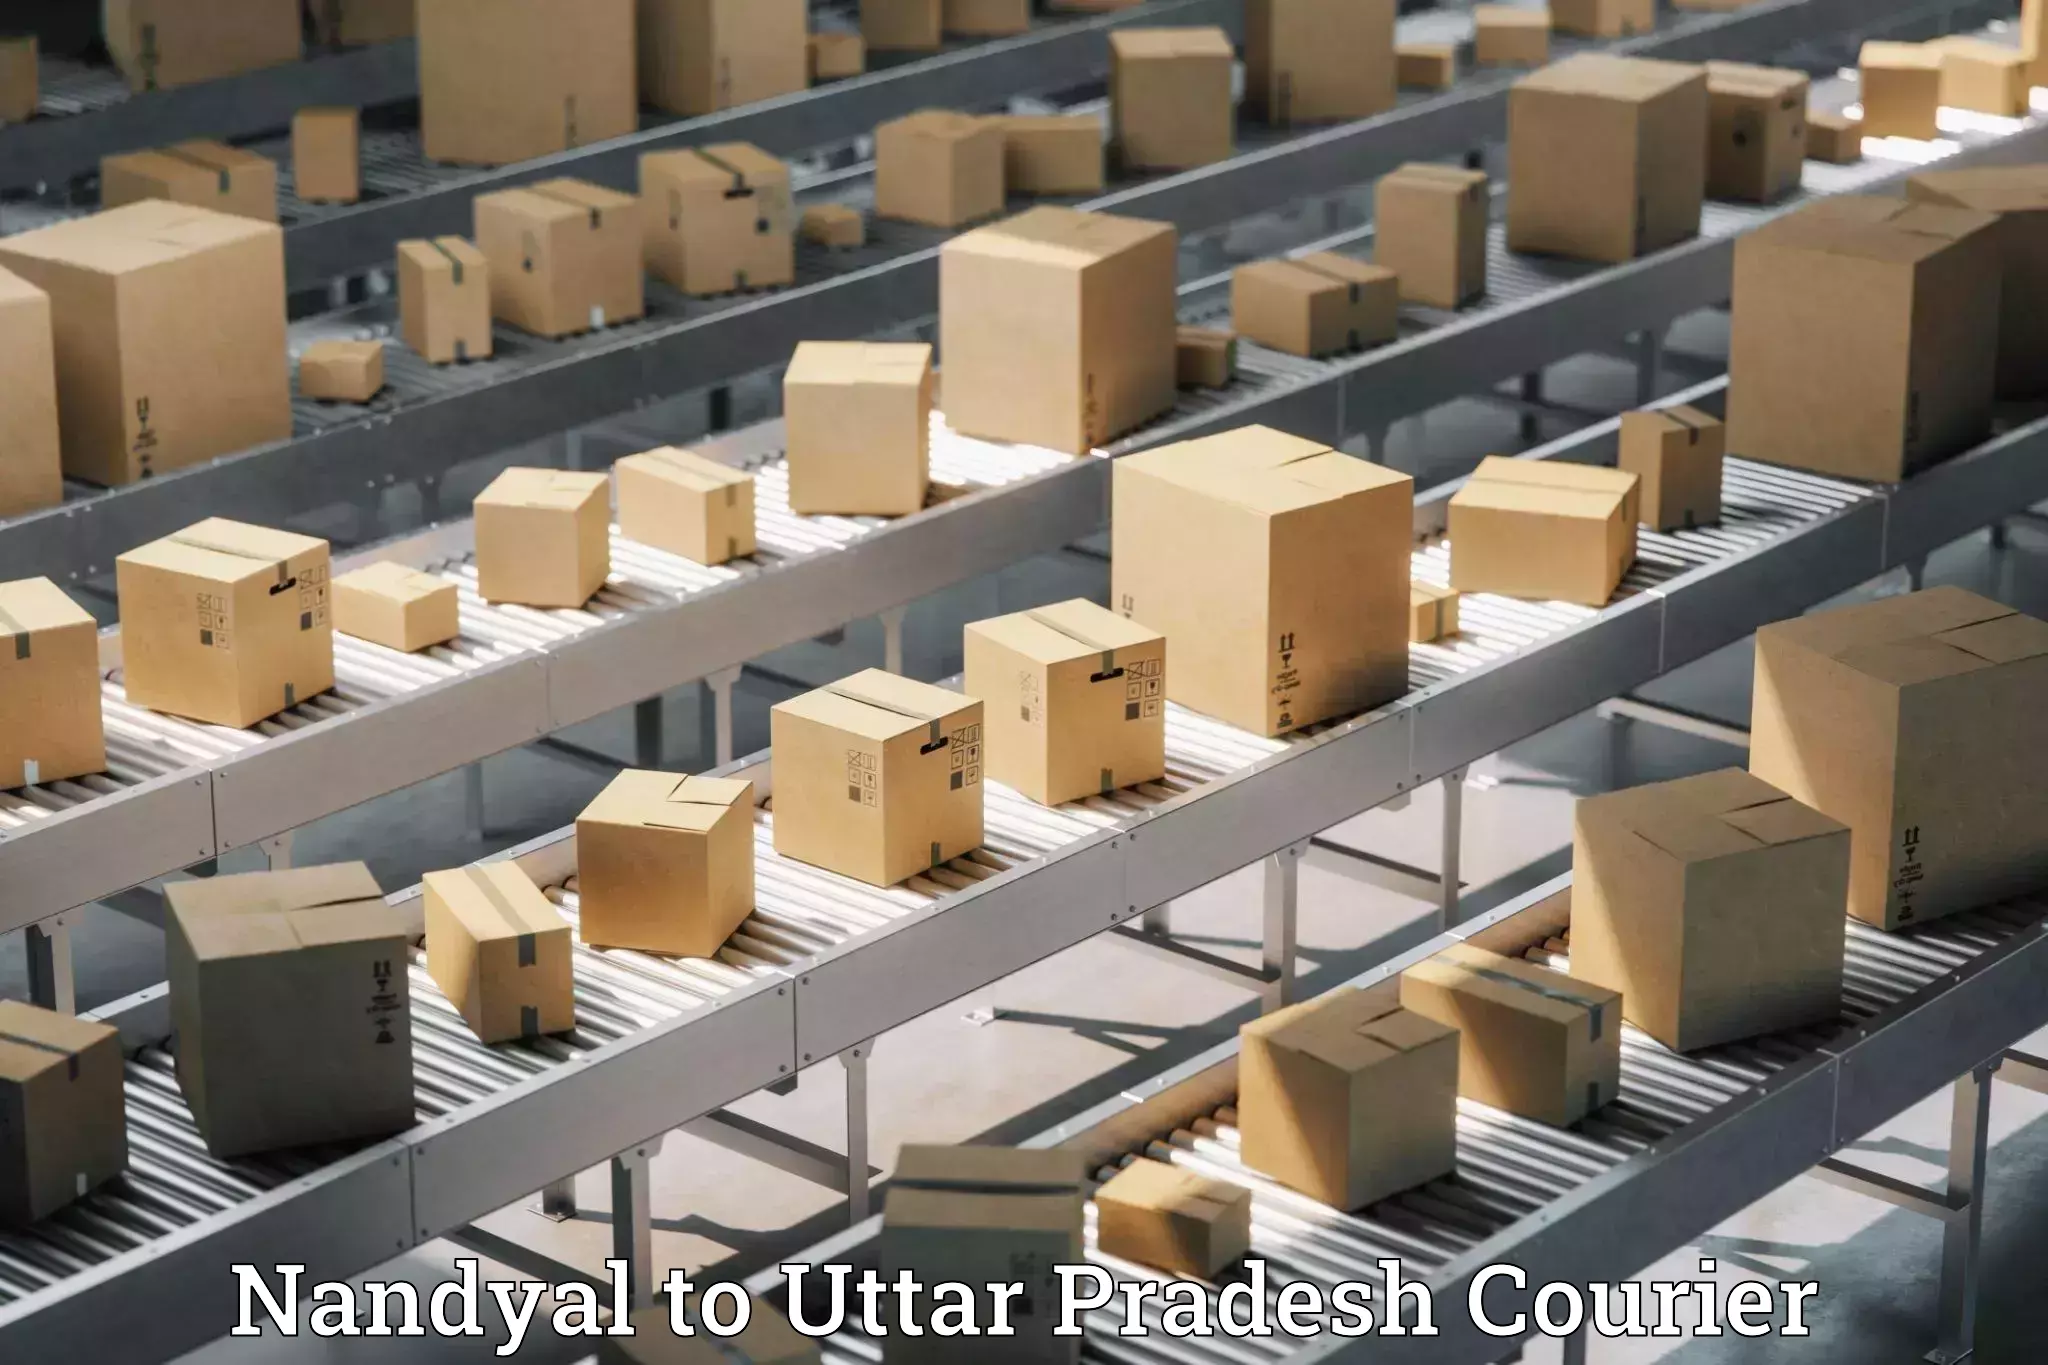 Customizable shipping options Nandyal to Menhdawal